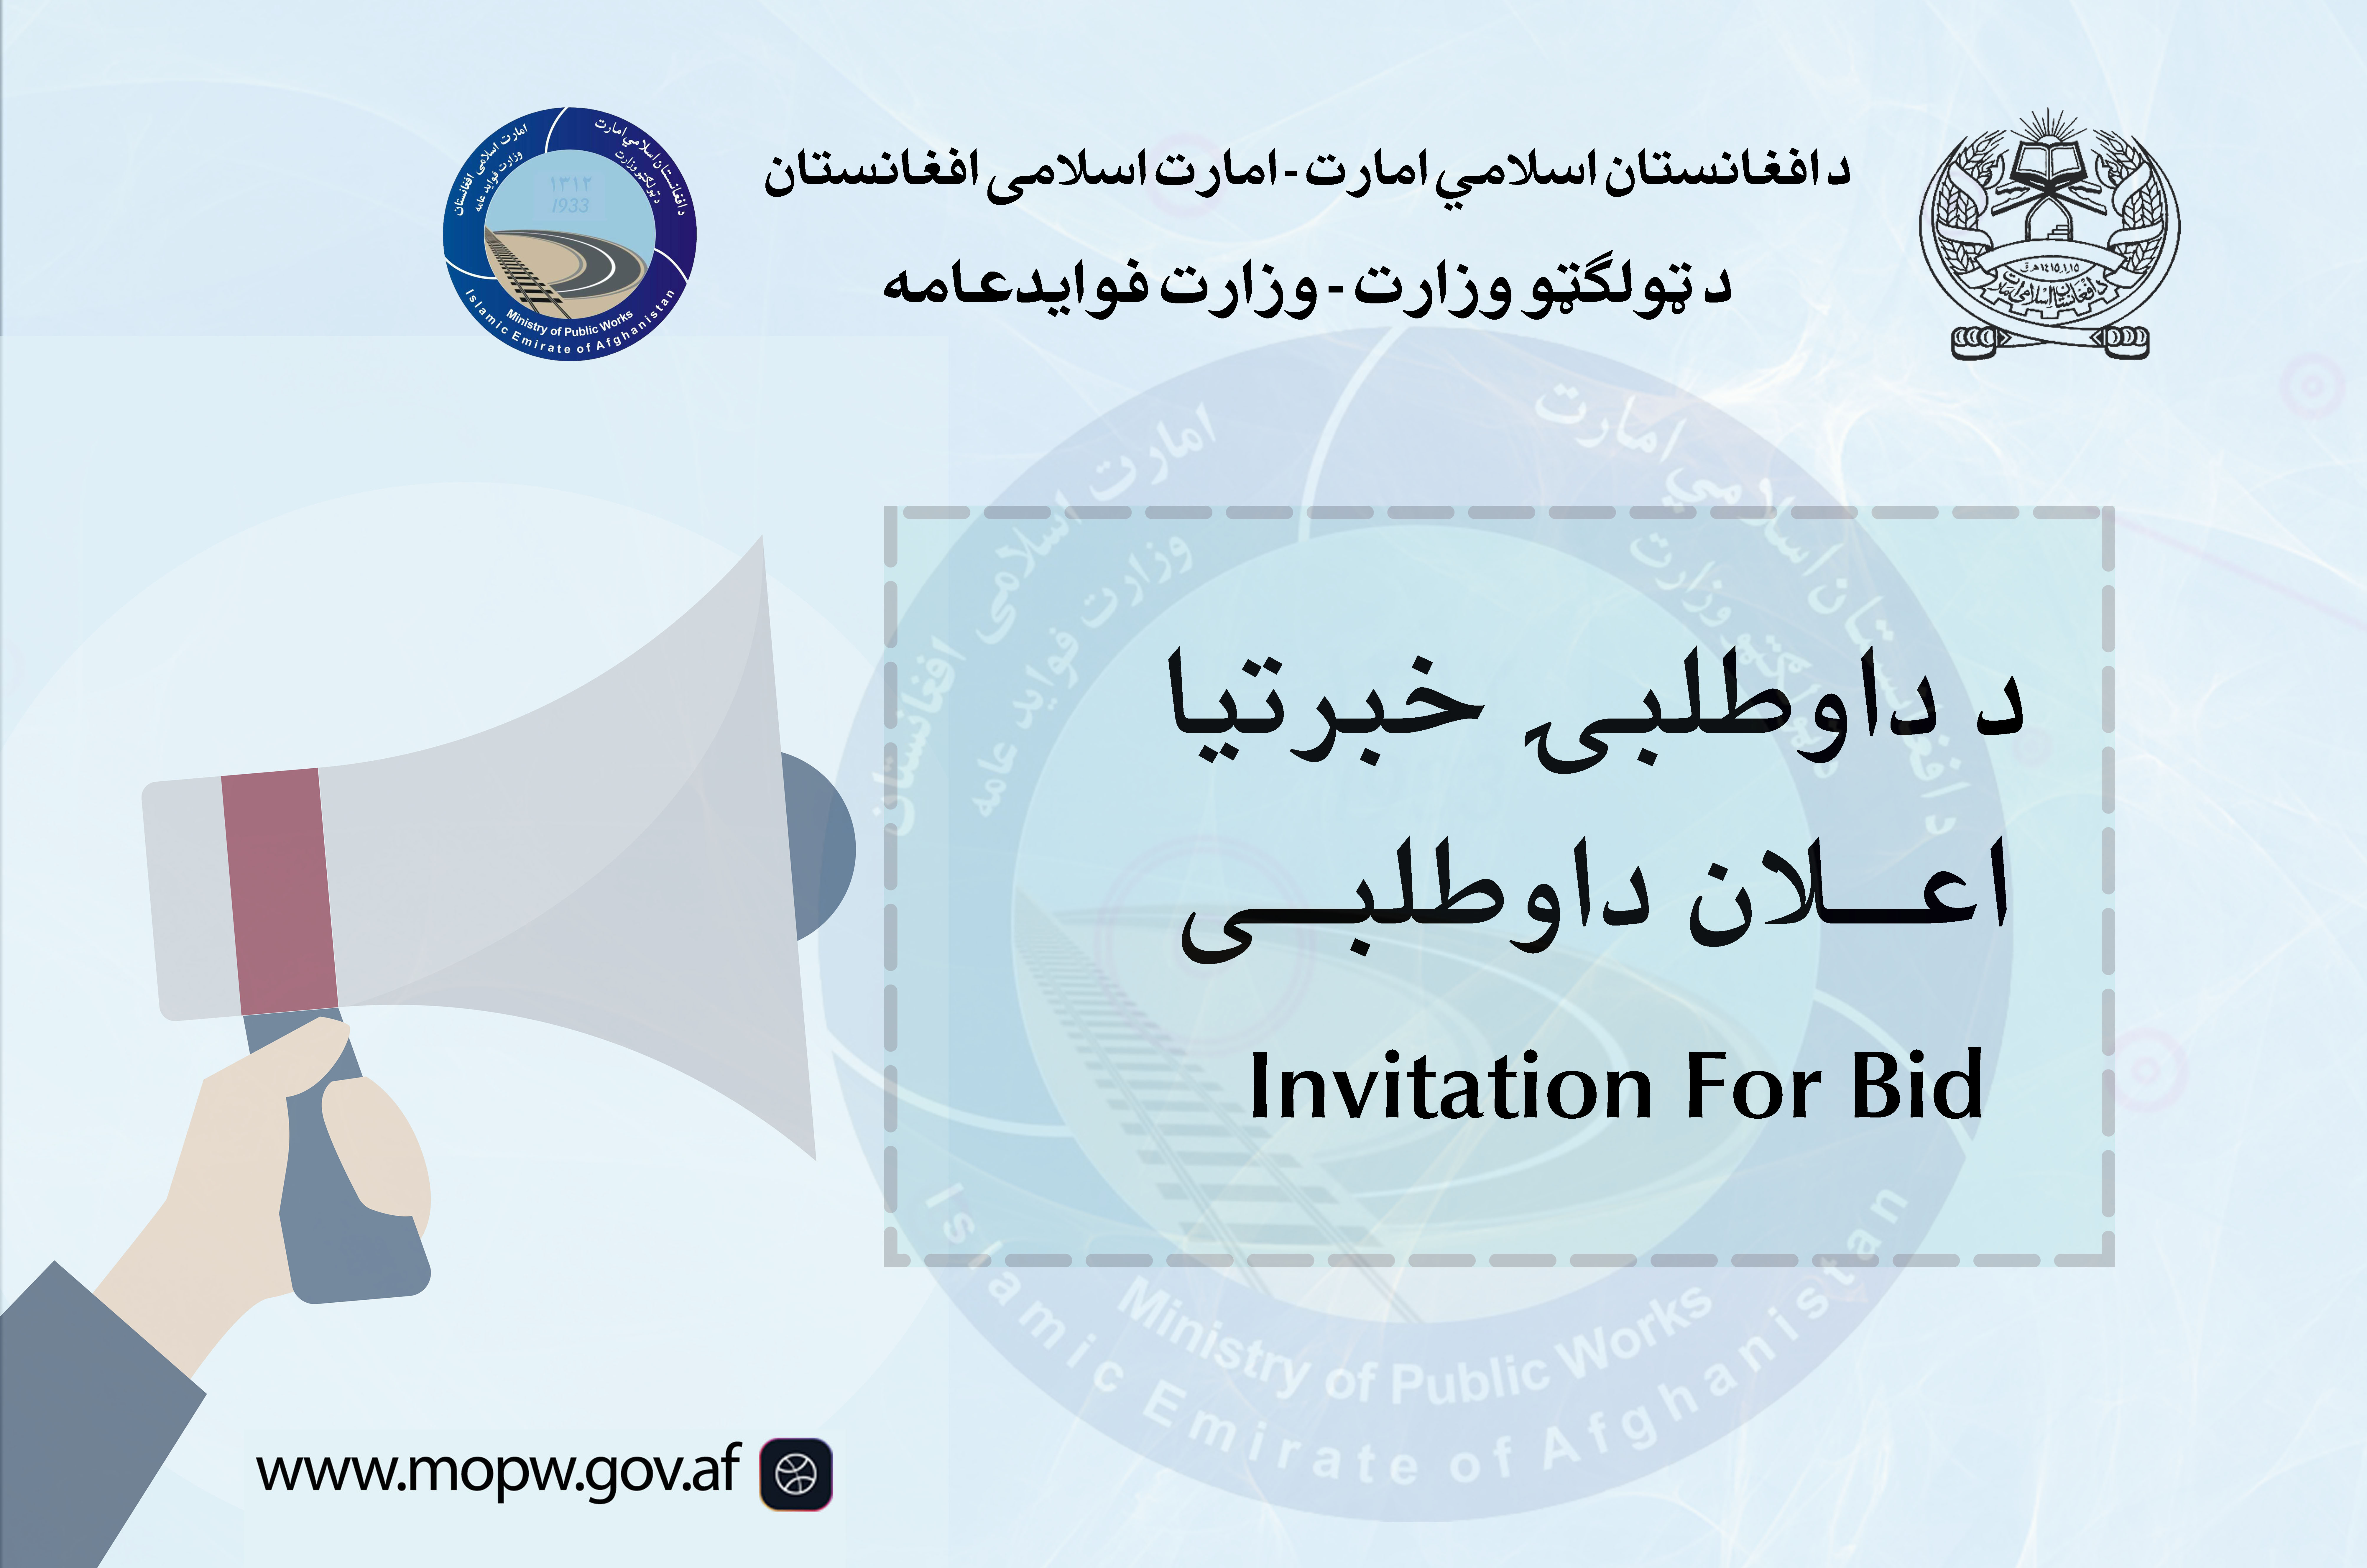 اعلان دعوت به داوطلبی پروژه ساختمان مجدد پل سنگرمانده واقع مسیر شاهراه عمومی کابل-کندهار